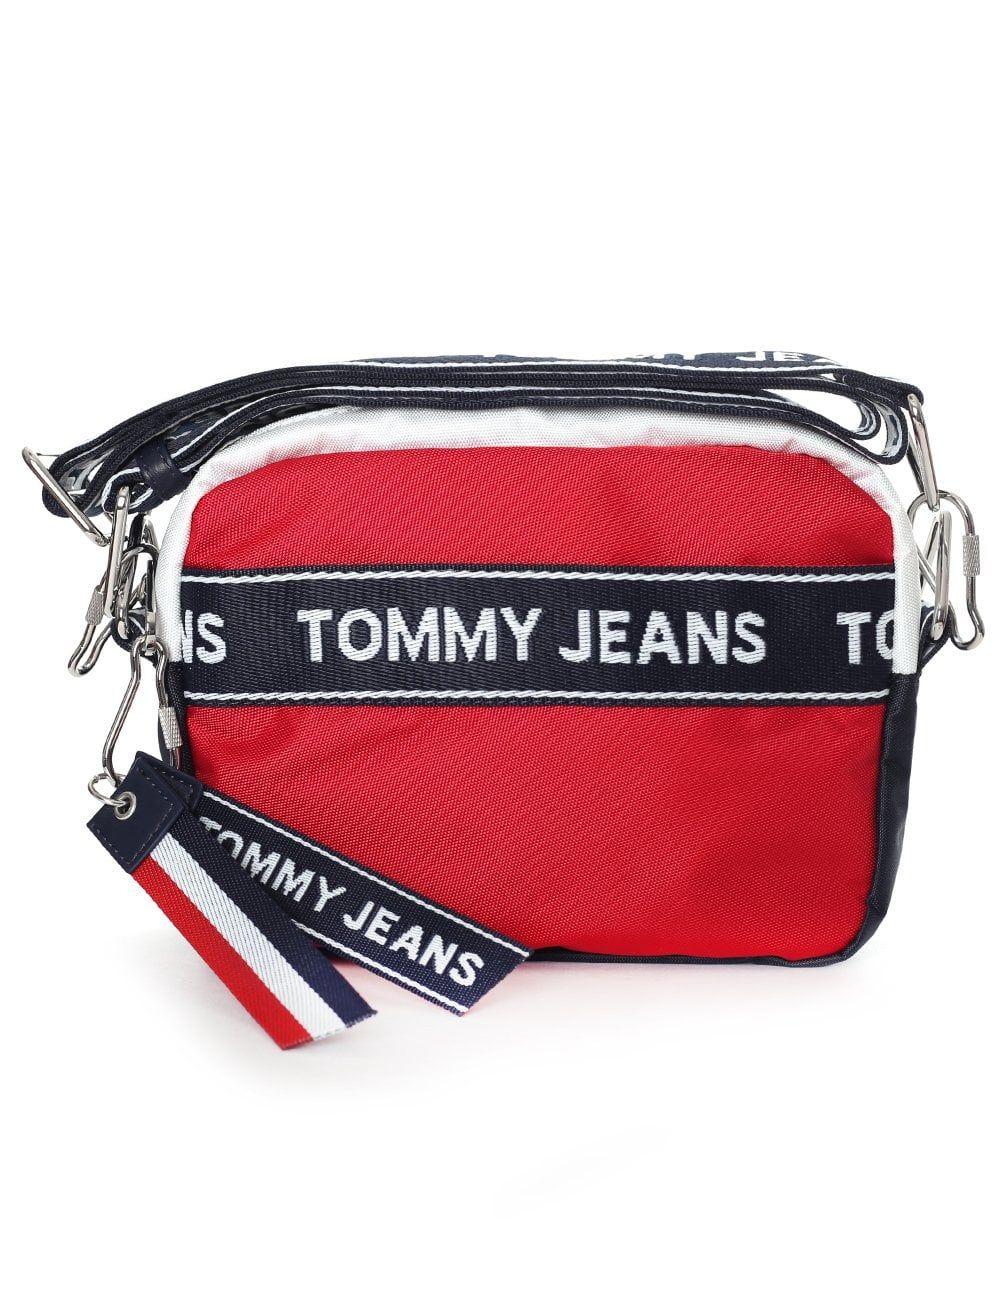 Tommy Jeans Logo - Tommy Hilfiger Women's Tommy Jeans Logo Camera Bag